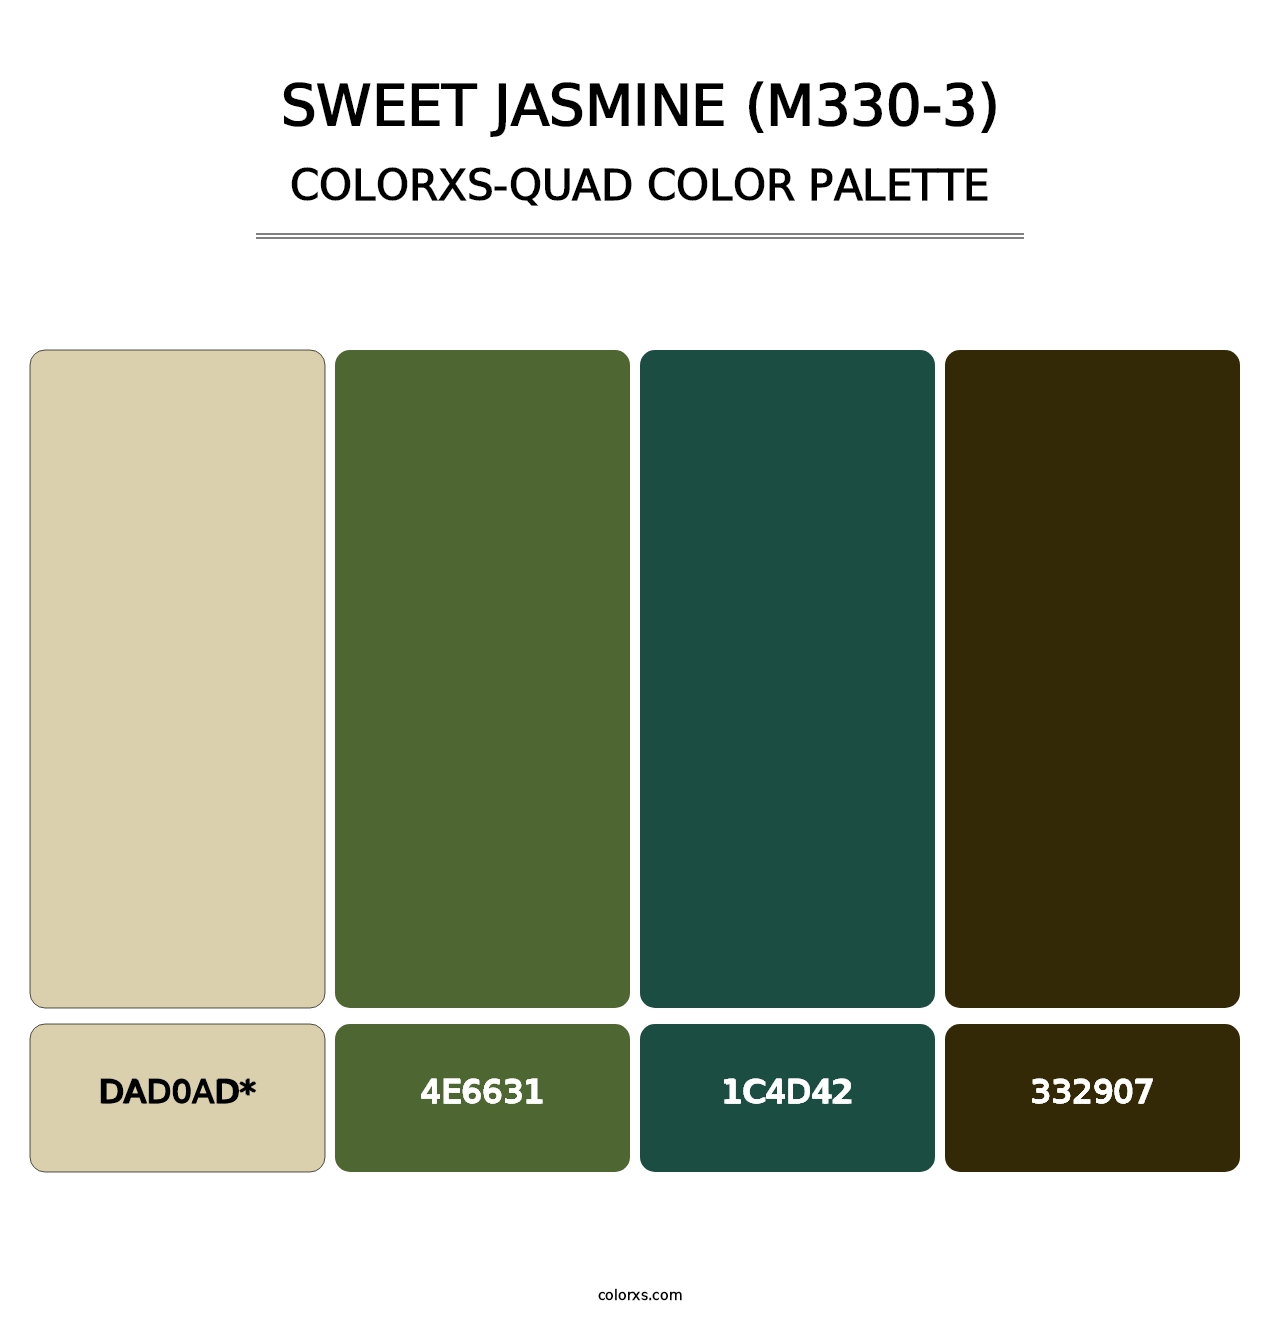 Sweet Jasmine (M330-3) - Colorxs Quad Palette